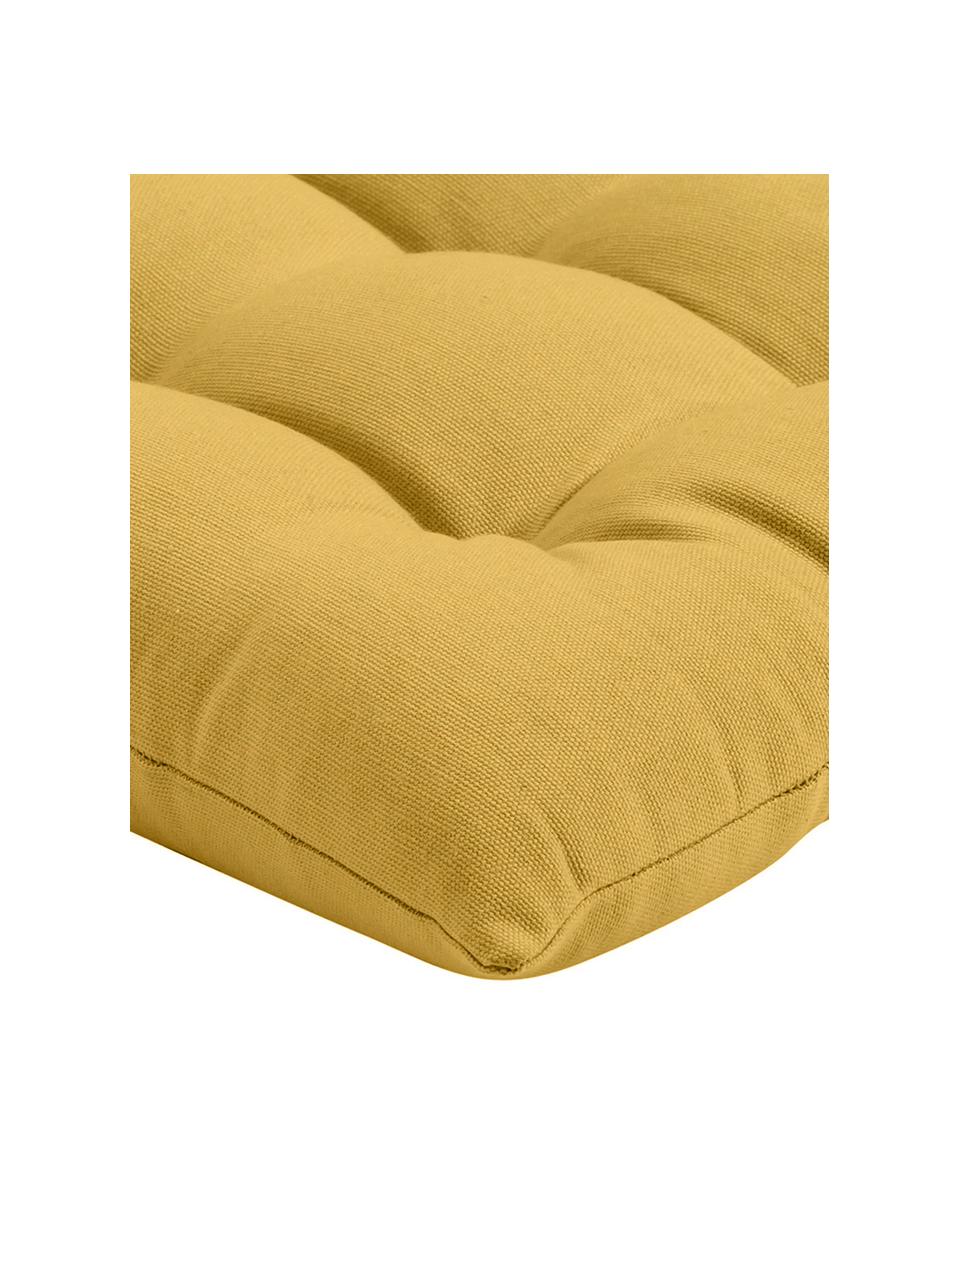 Poduszka siedziska na krzesło z bawełny Ava, Żółty, S 40 x D 40 cm